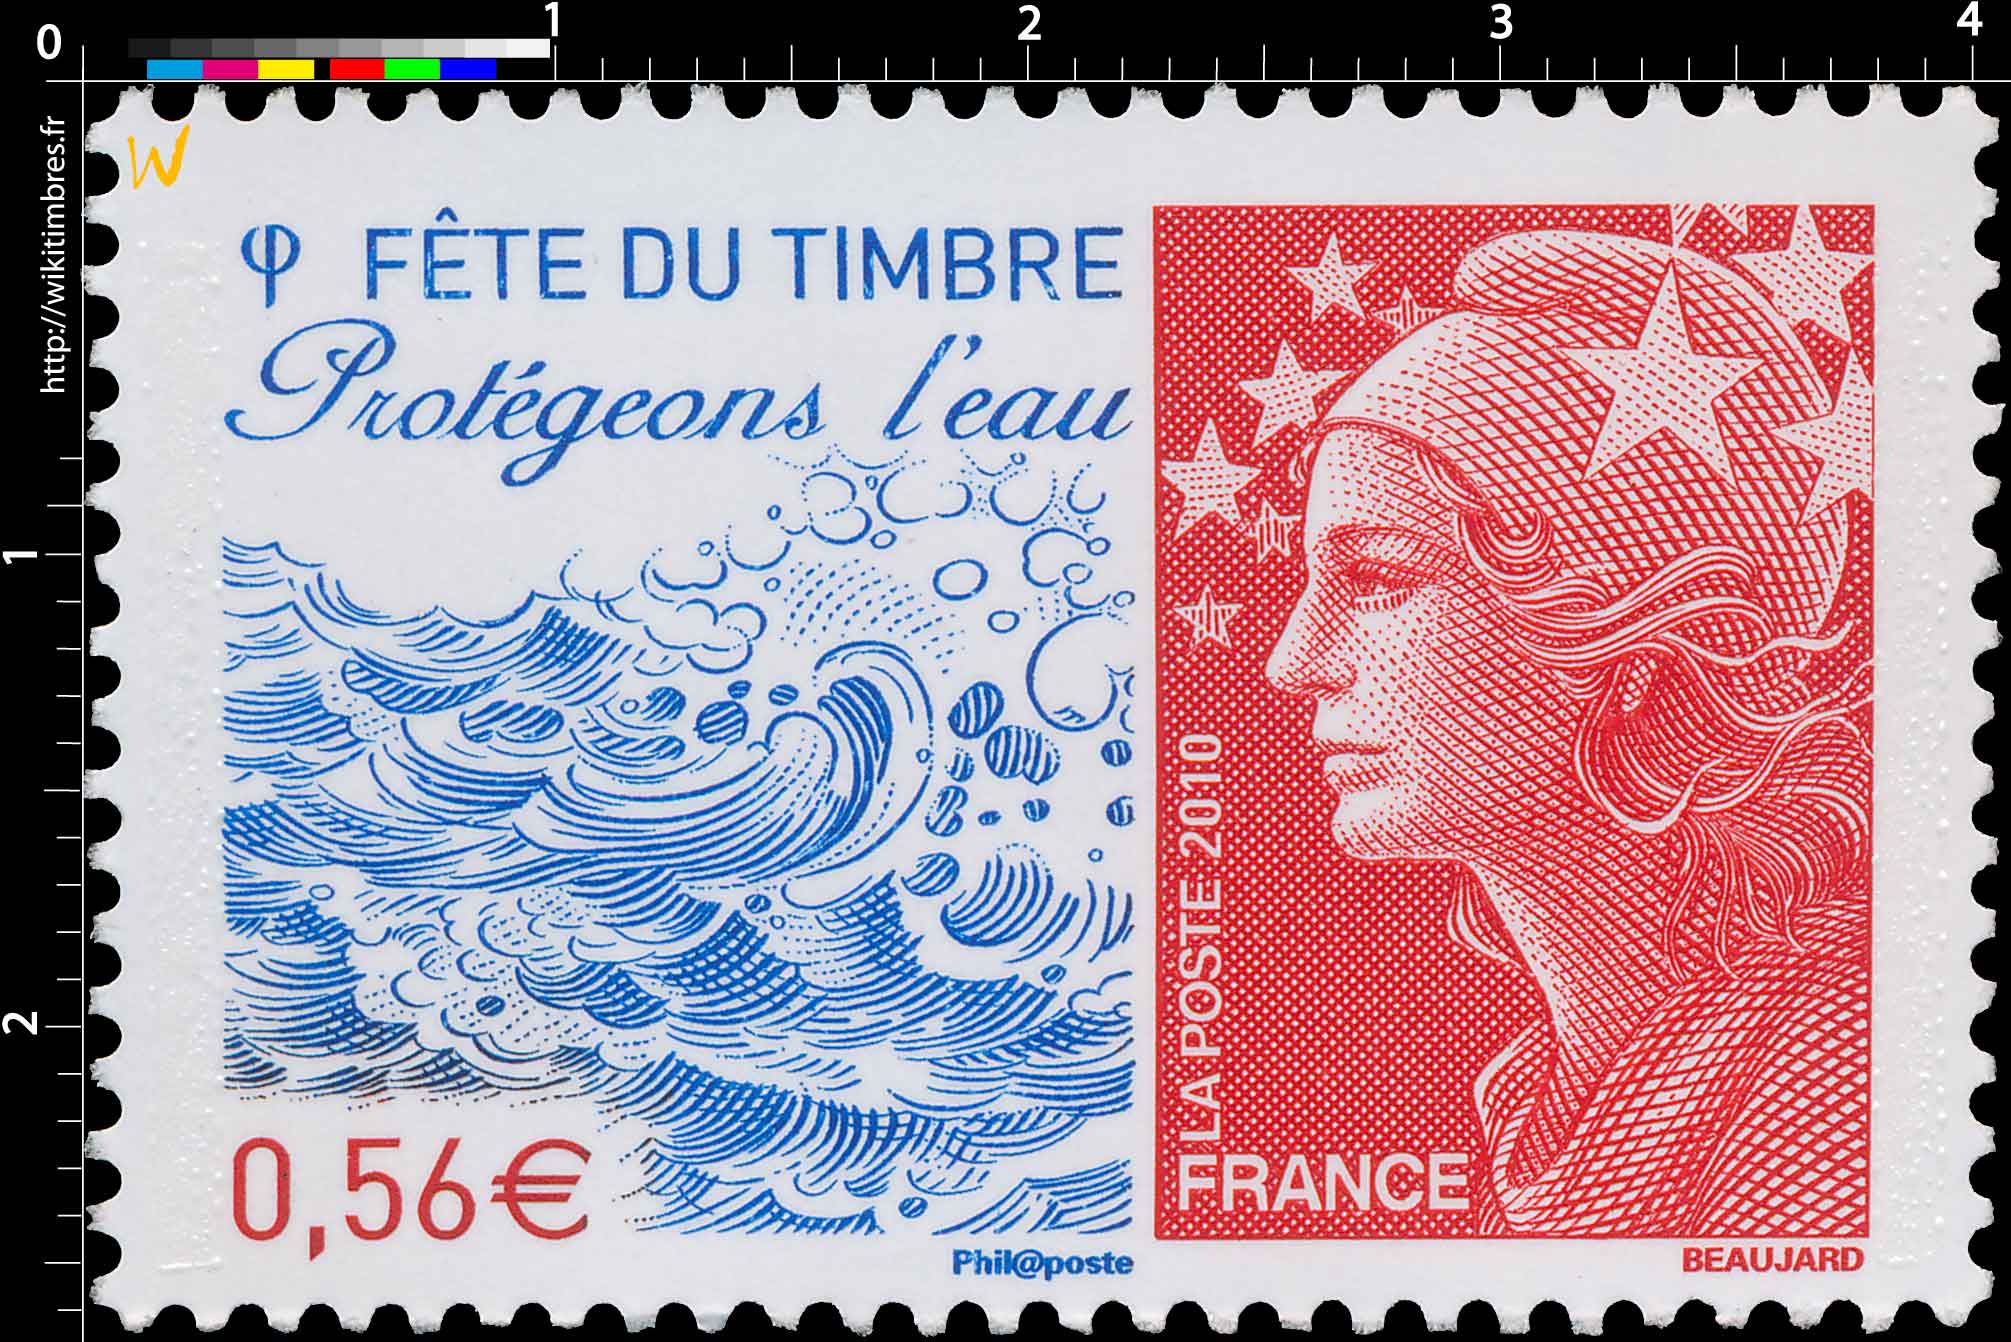 Fête du Timbre Protégeons l’eau - type Marianne de Beaujard